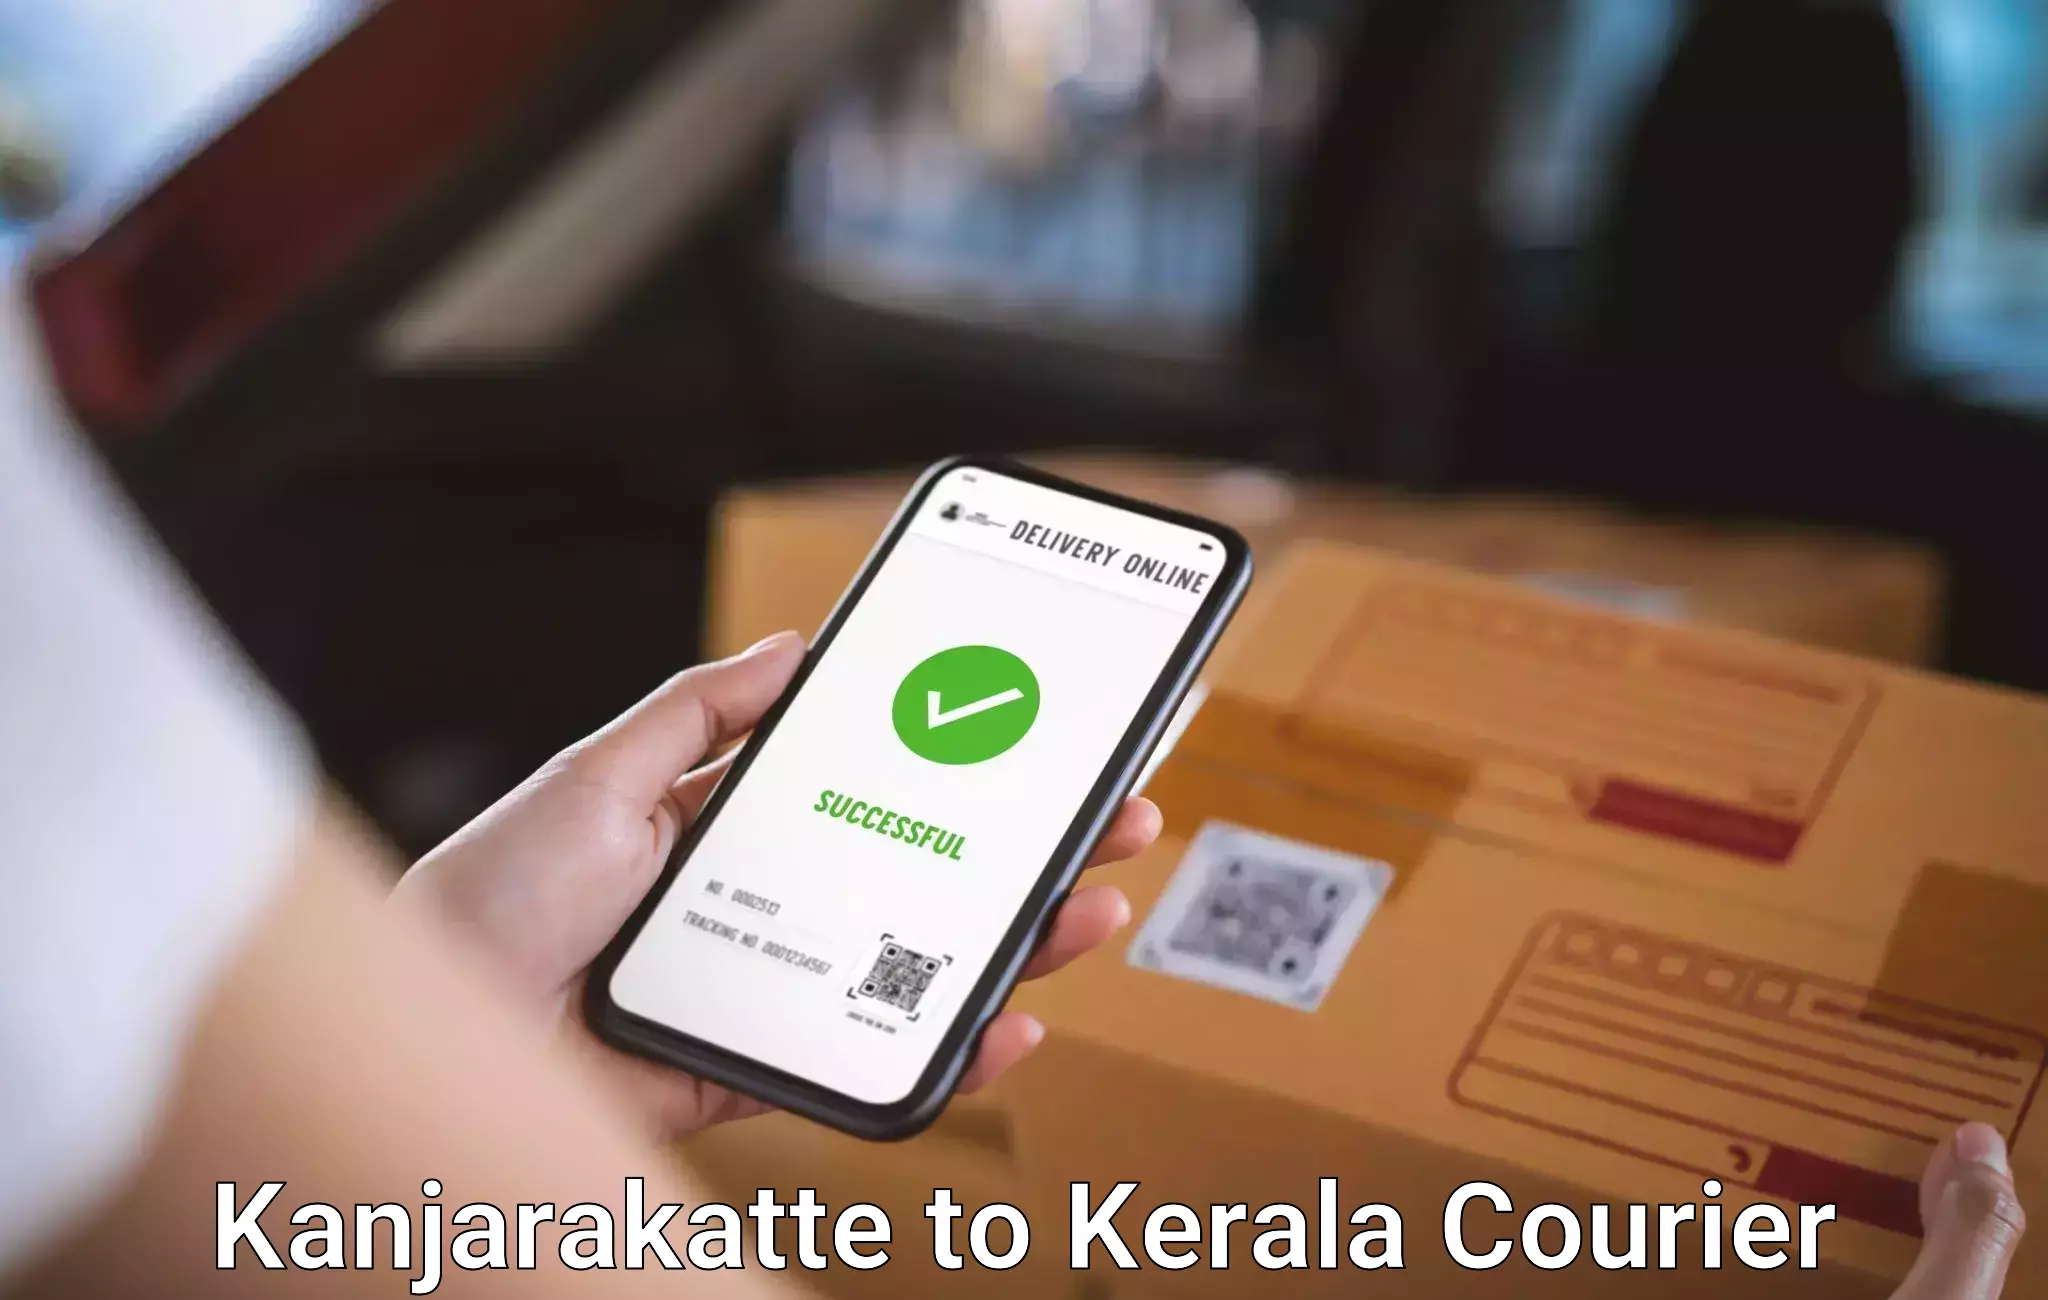 Baggage relocation service Kanjarakatte to Kerala